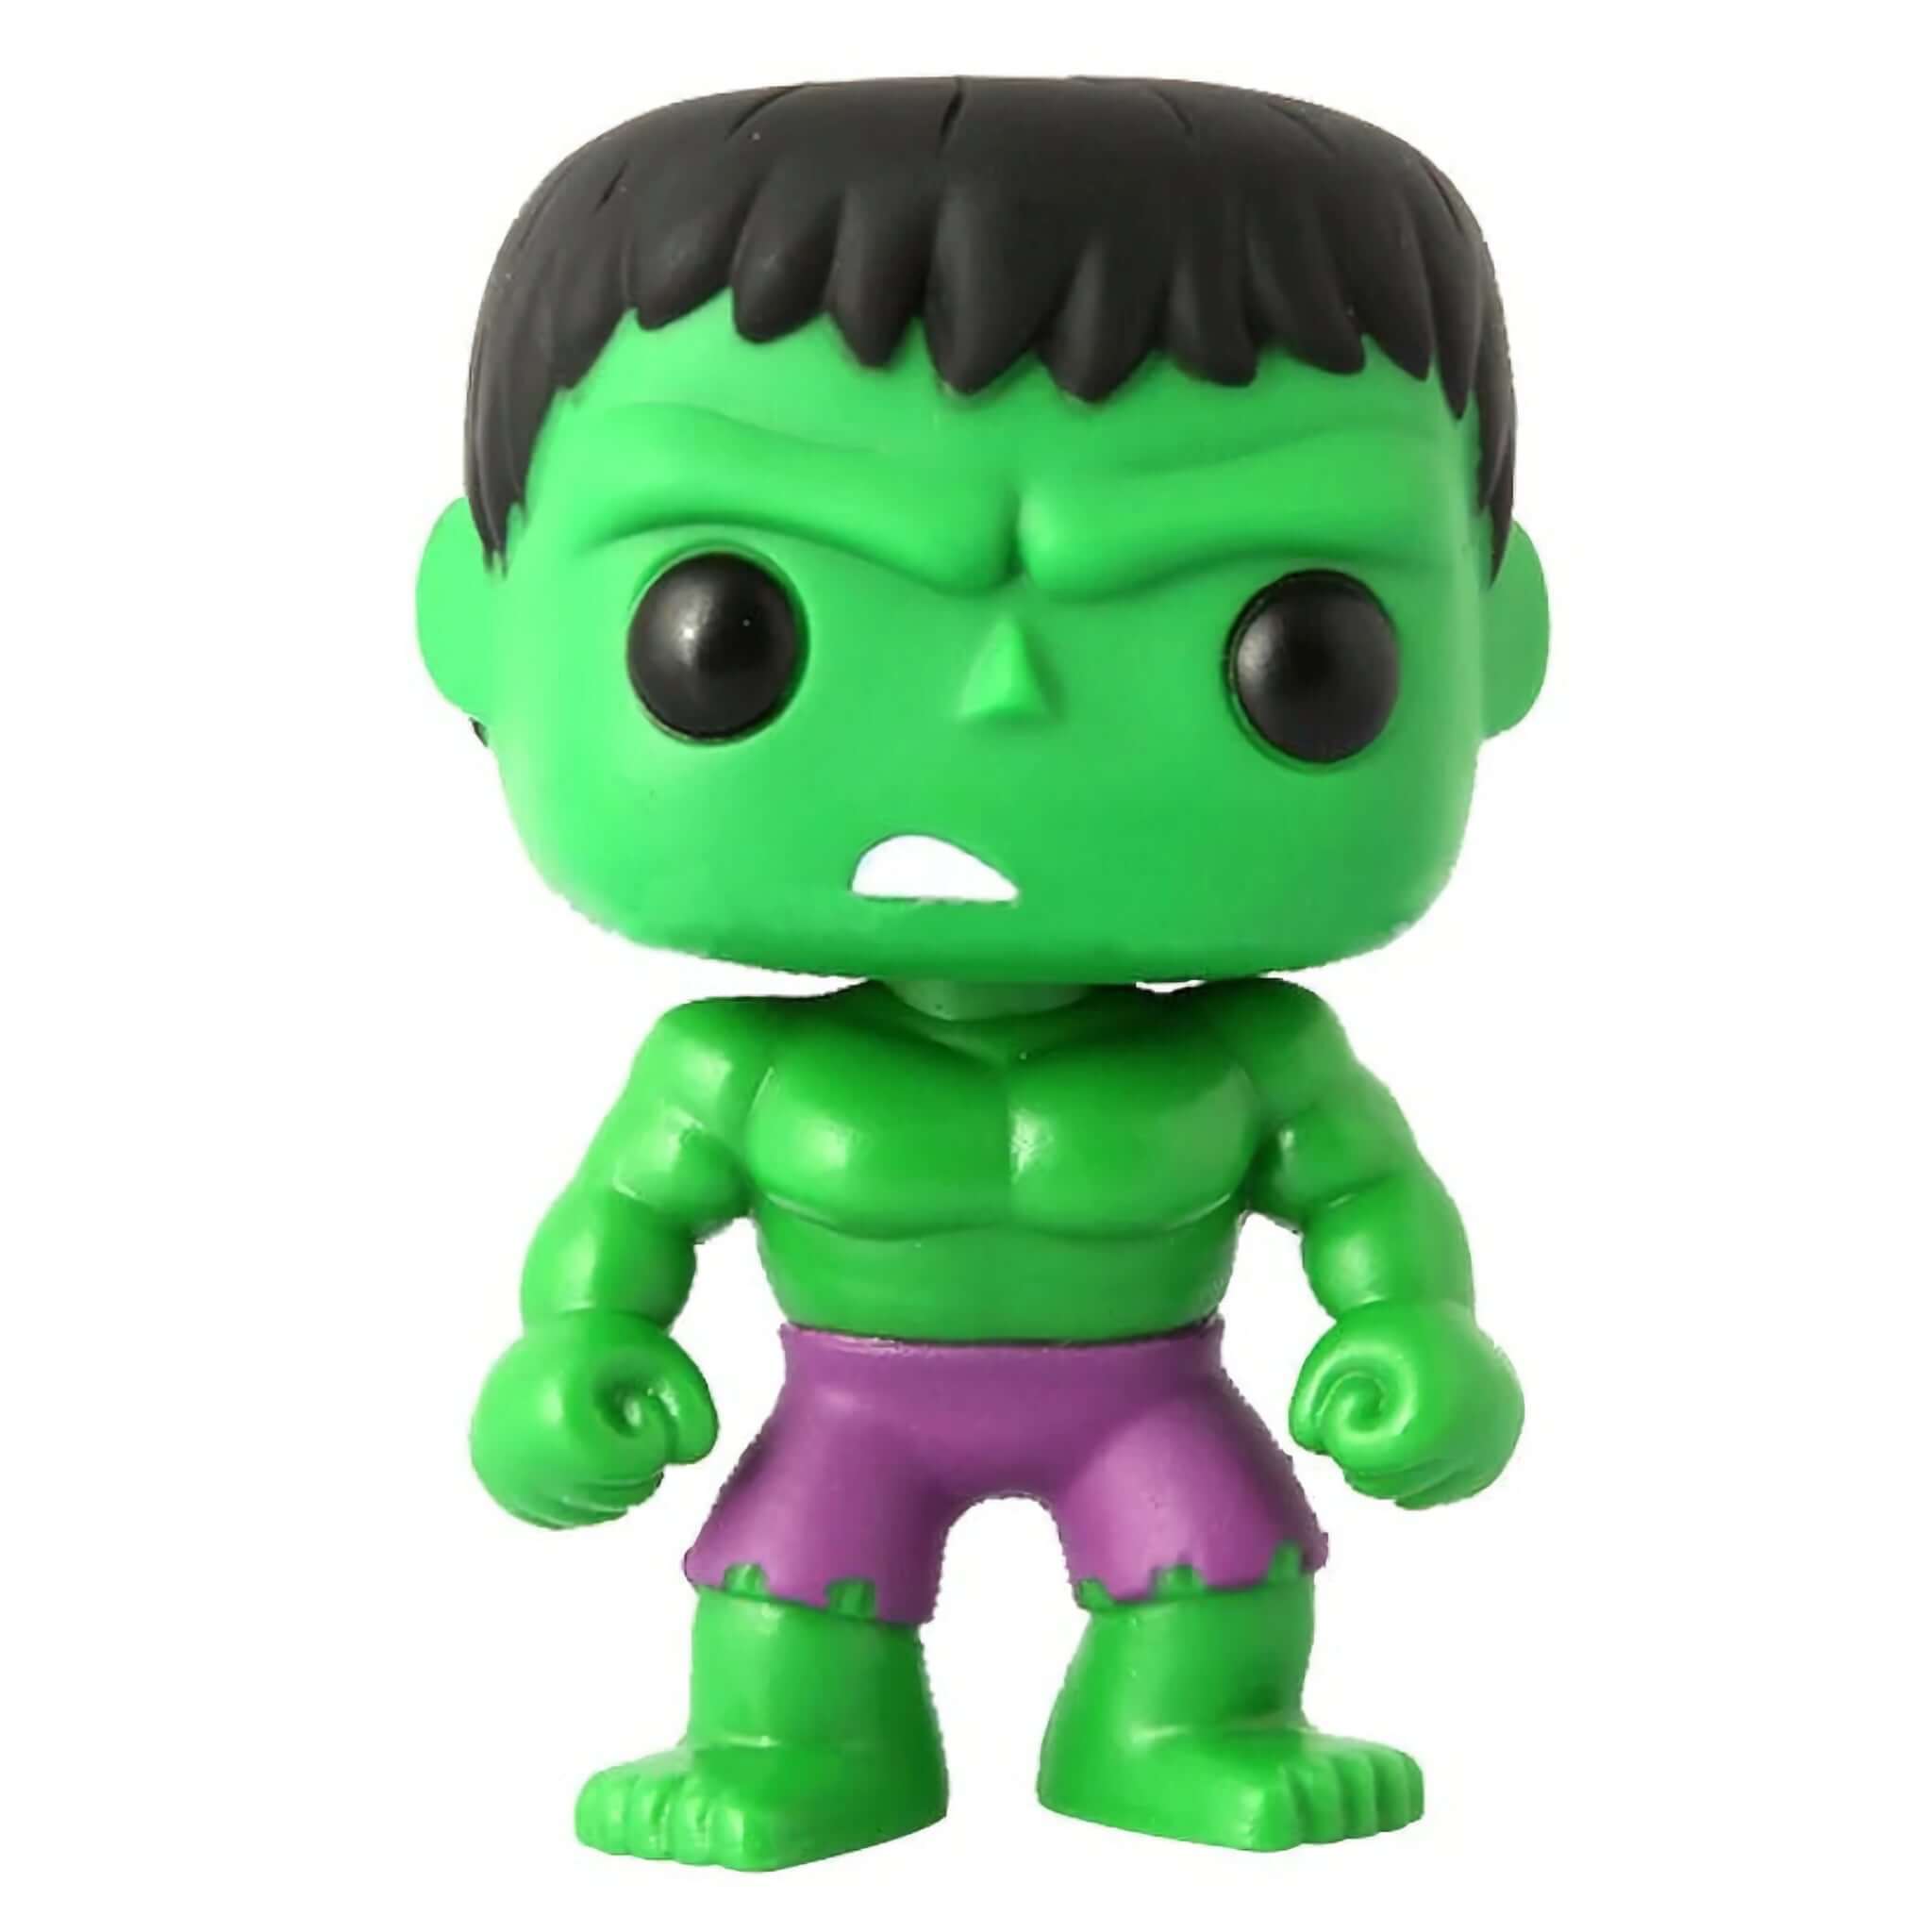 The Hulk Funko Pop!